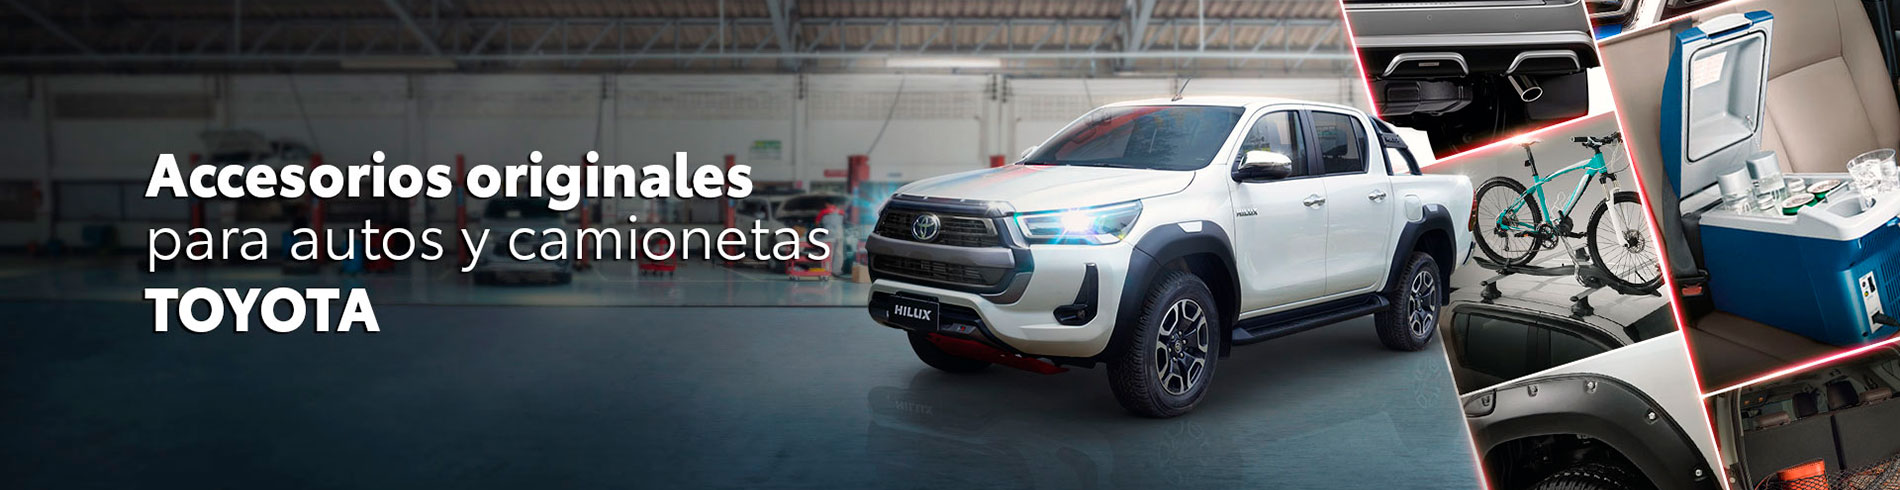 Toyota Perú - Accesorios